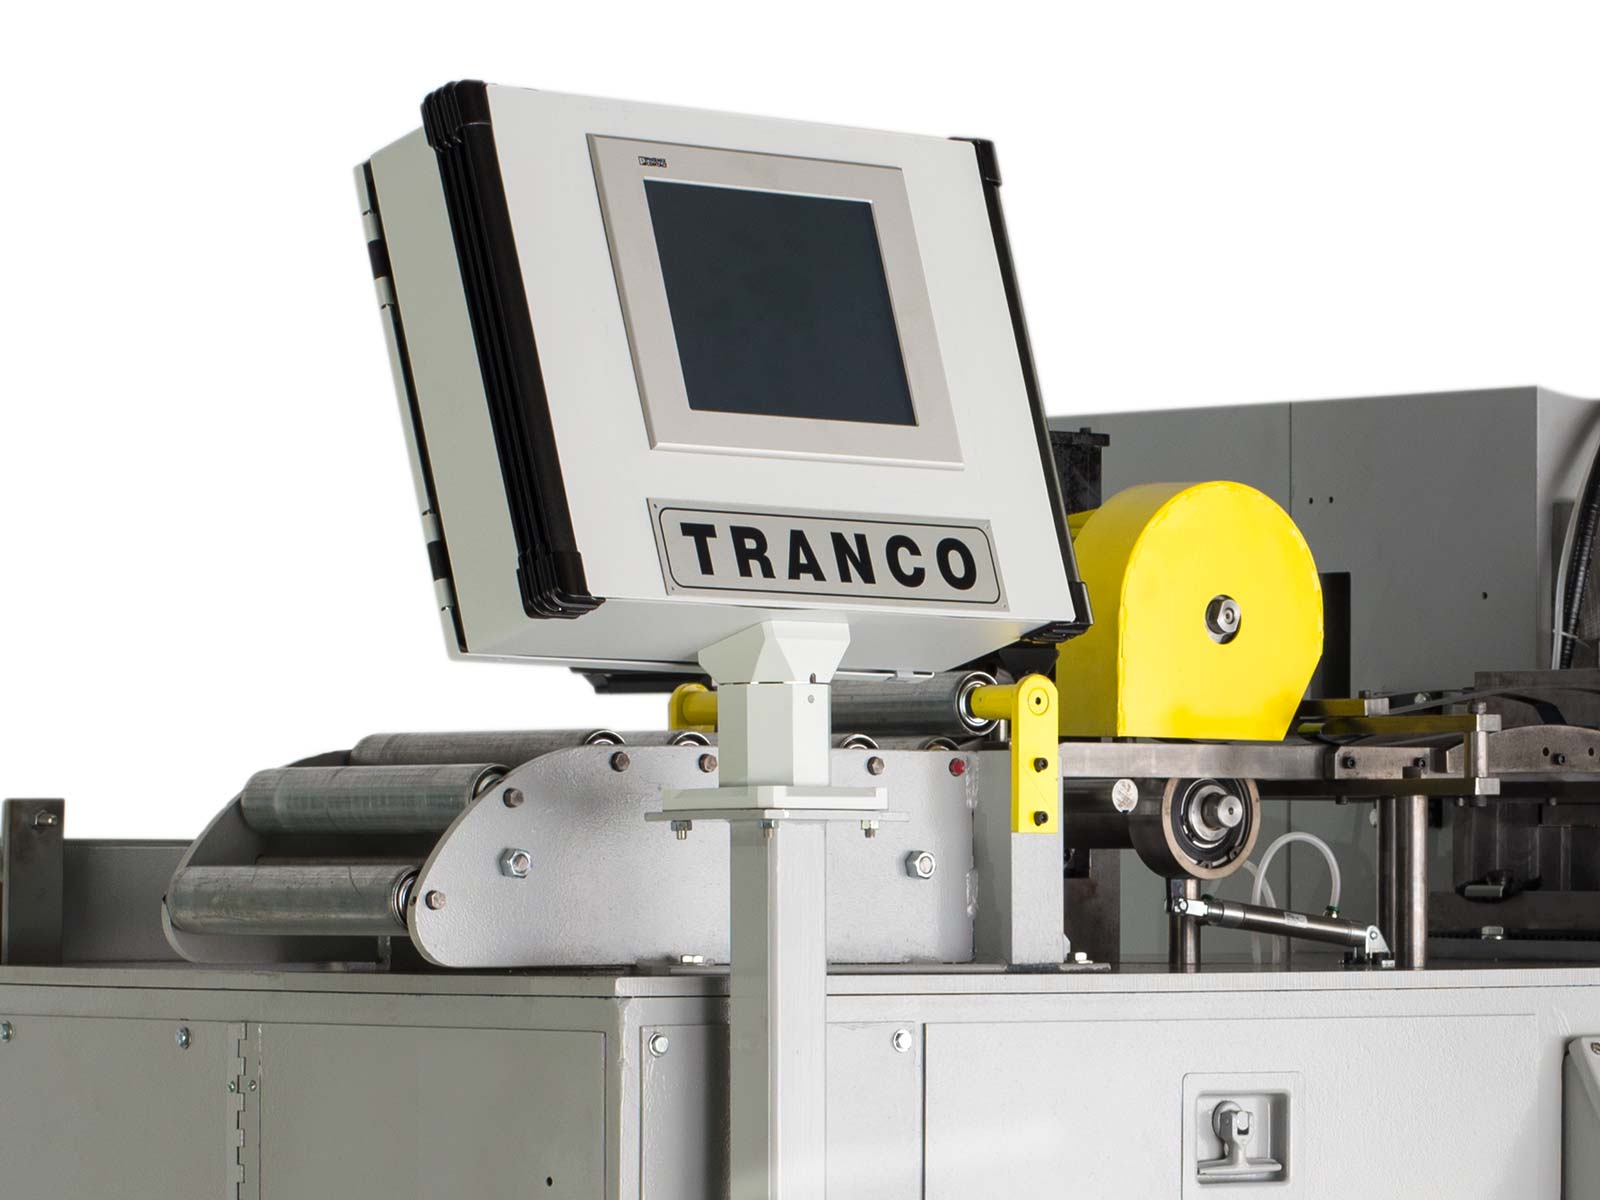 retro fit core winding machine from Tranco